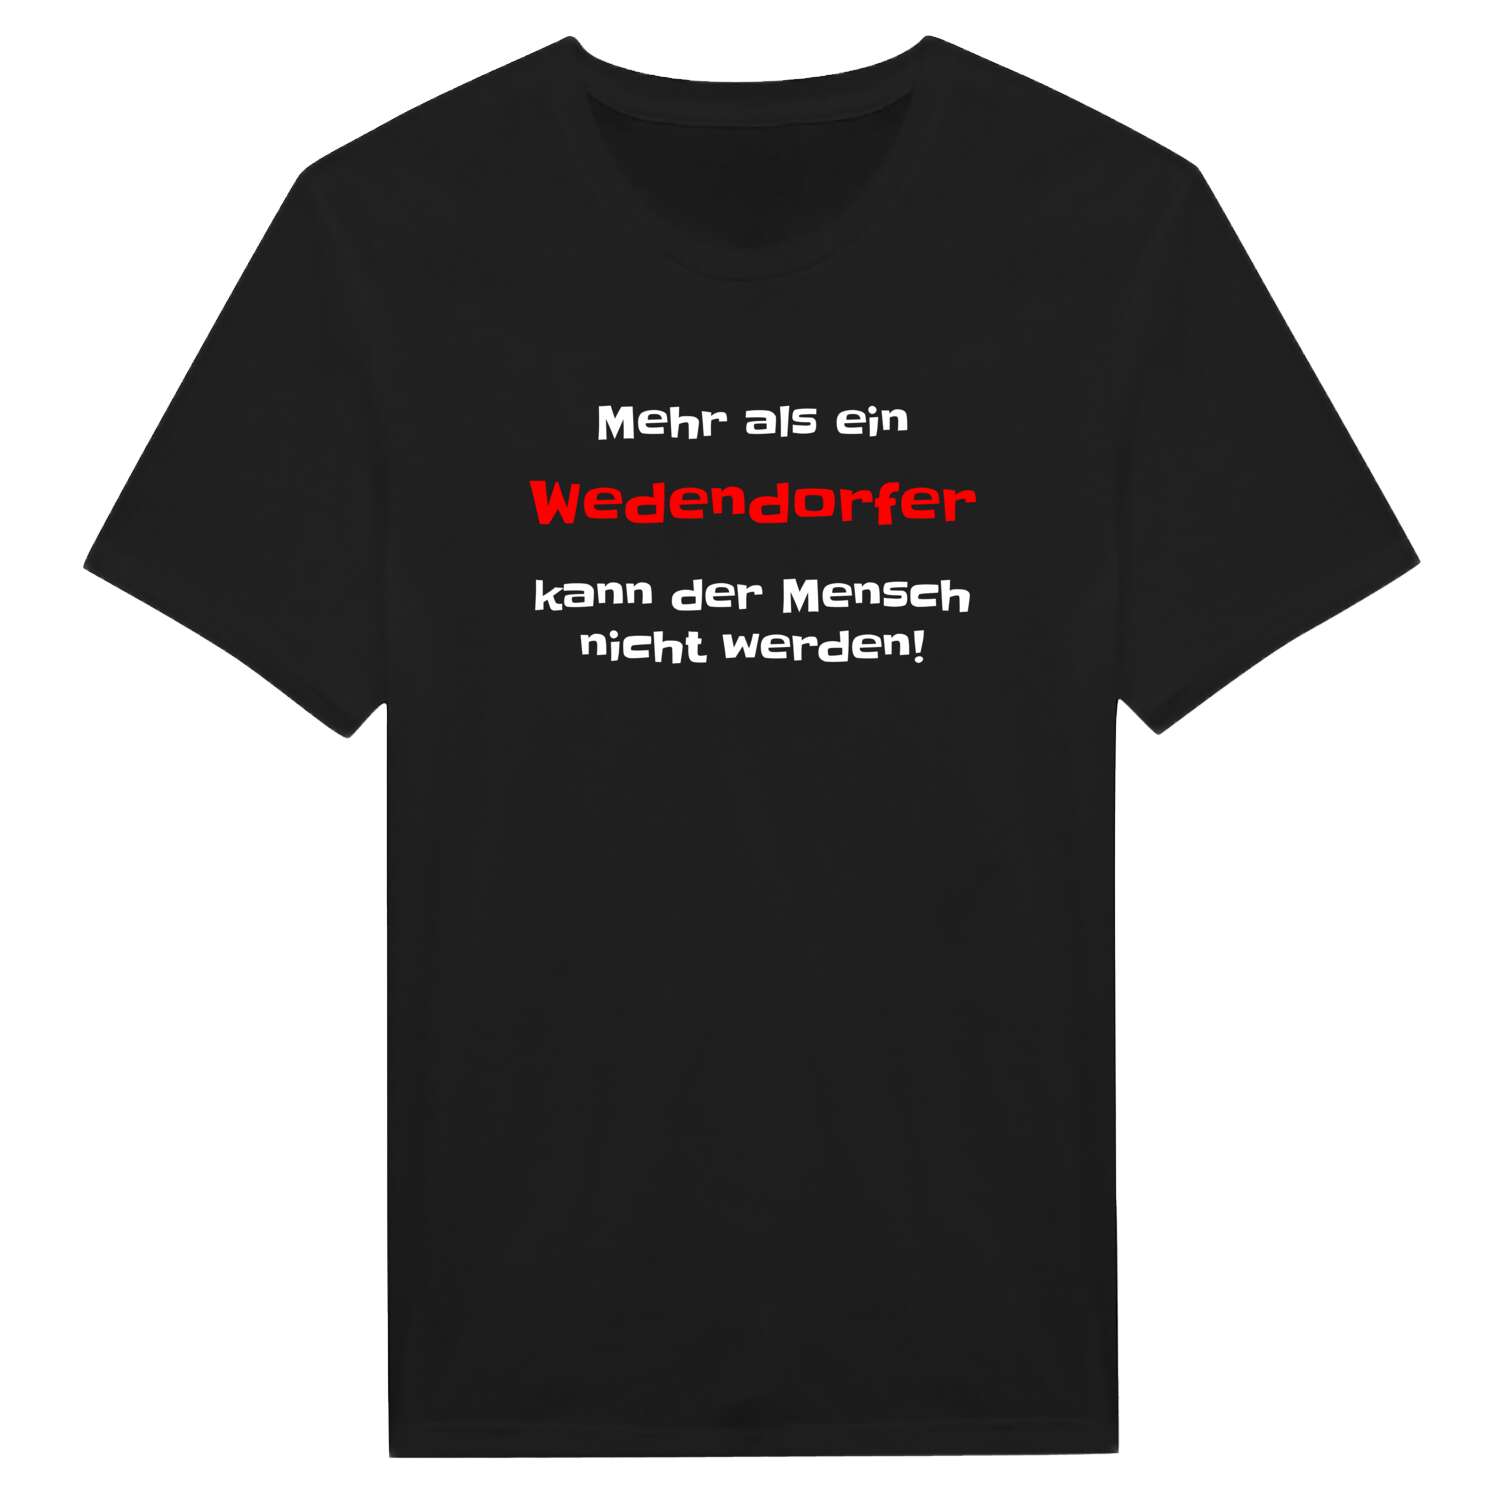 Wedendorf T-Shirt »Mehr als ein«